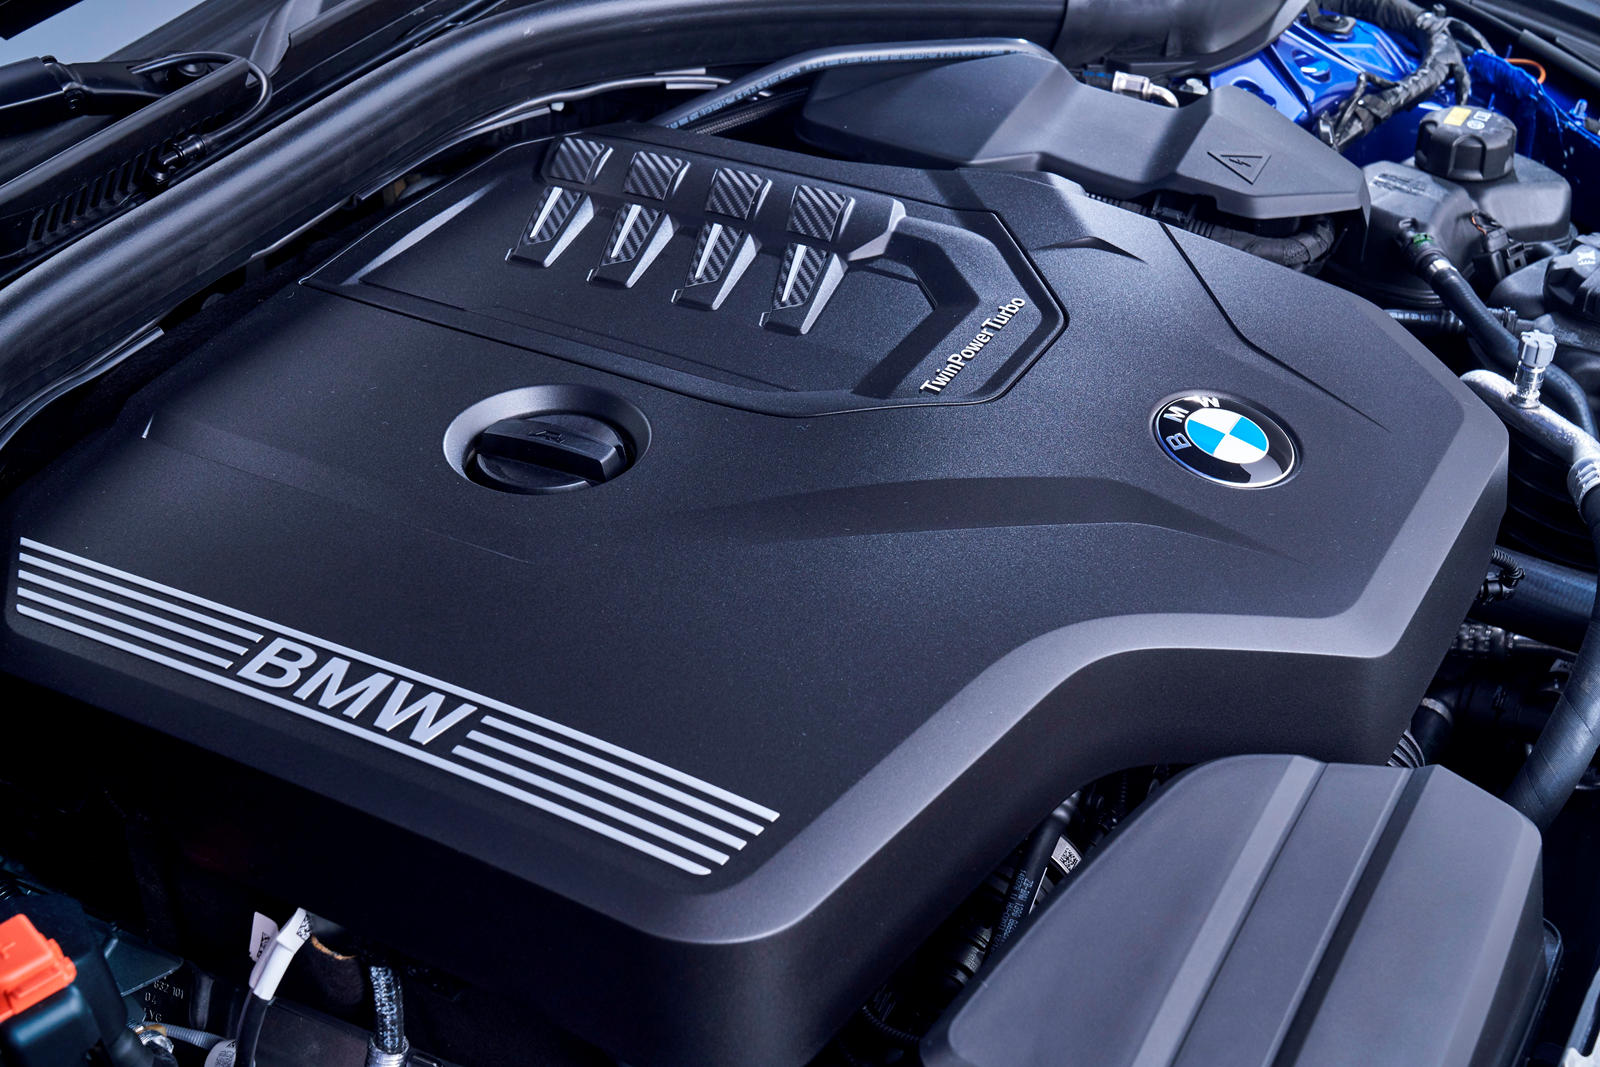 Beklenen an geldi: 2019 BMW 3 Serisi resmen tanıtıldı